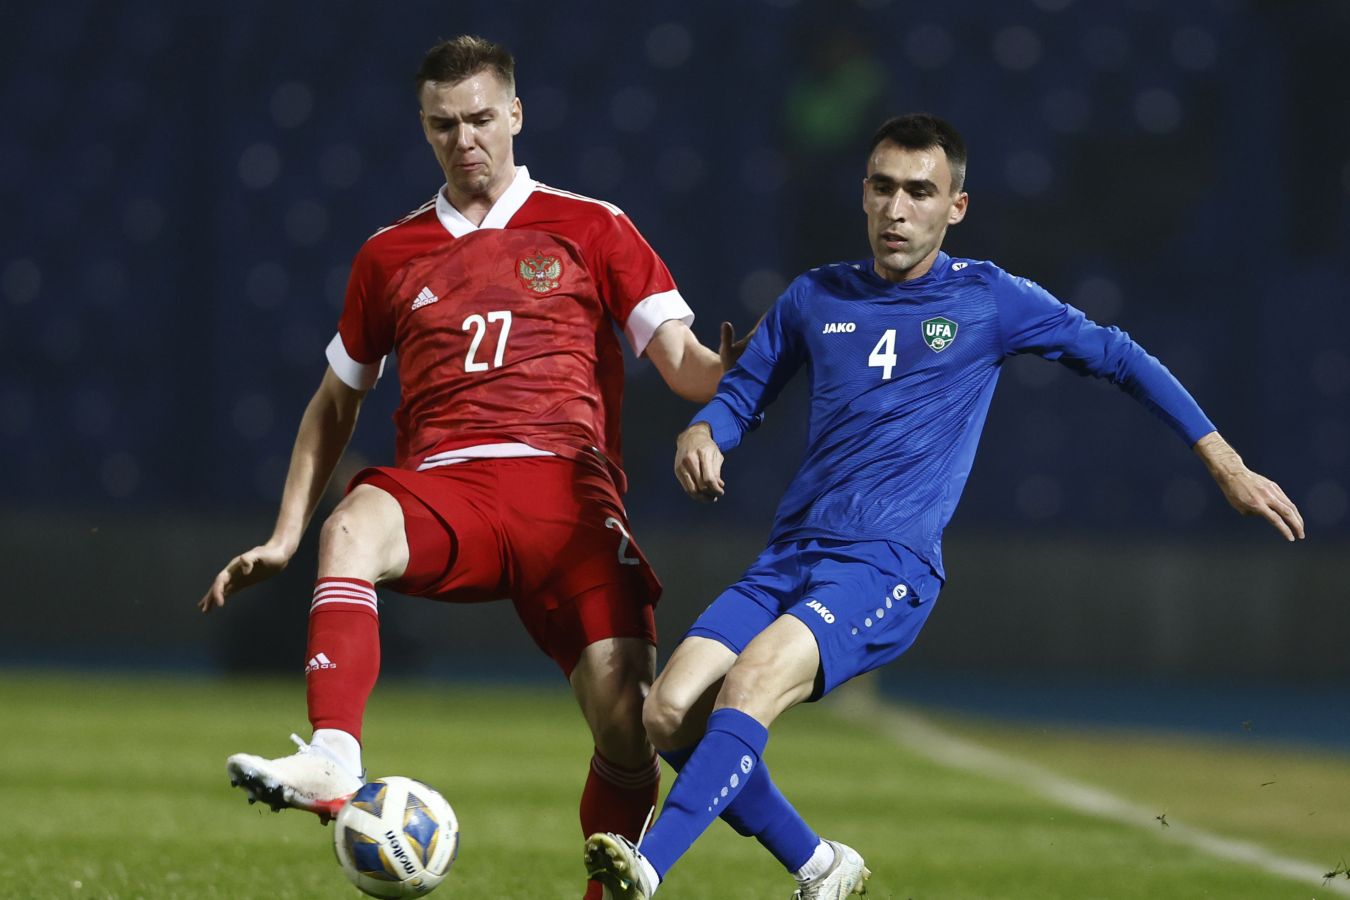 Александр Сильянов высказался о травме, полученной в матче с Узбекистаном